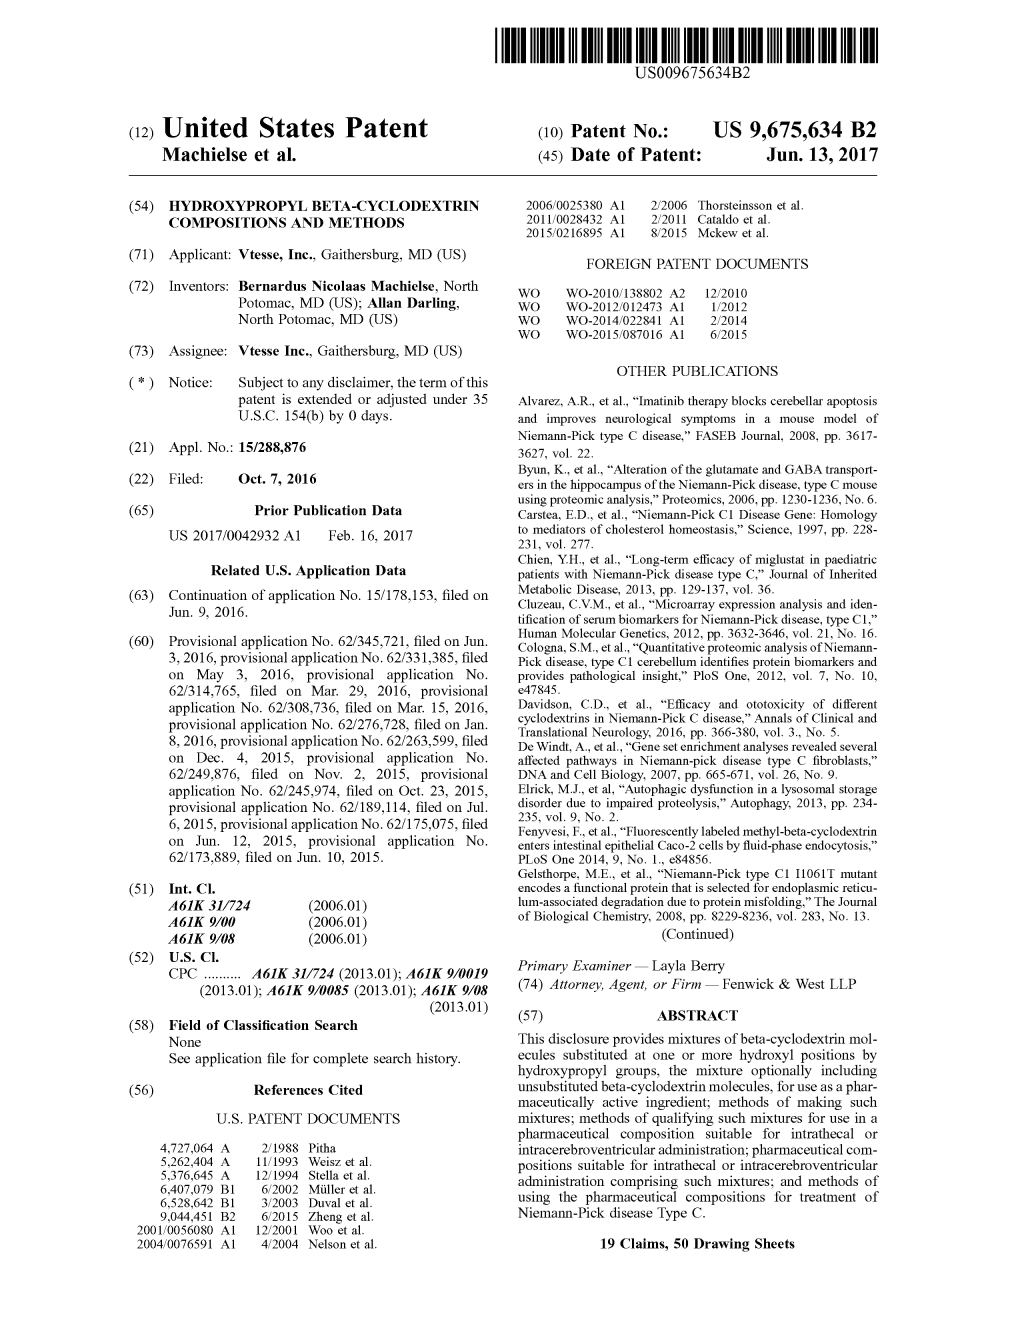 (12) United States Patent (10) Patent No.: US 9,675,634 B2 Machielse Et Al